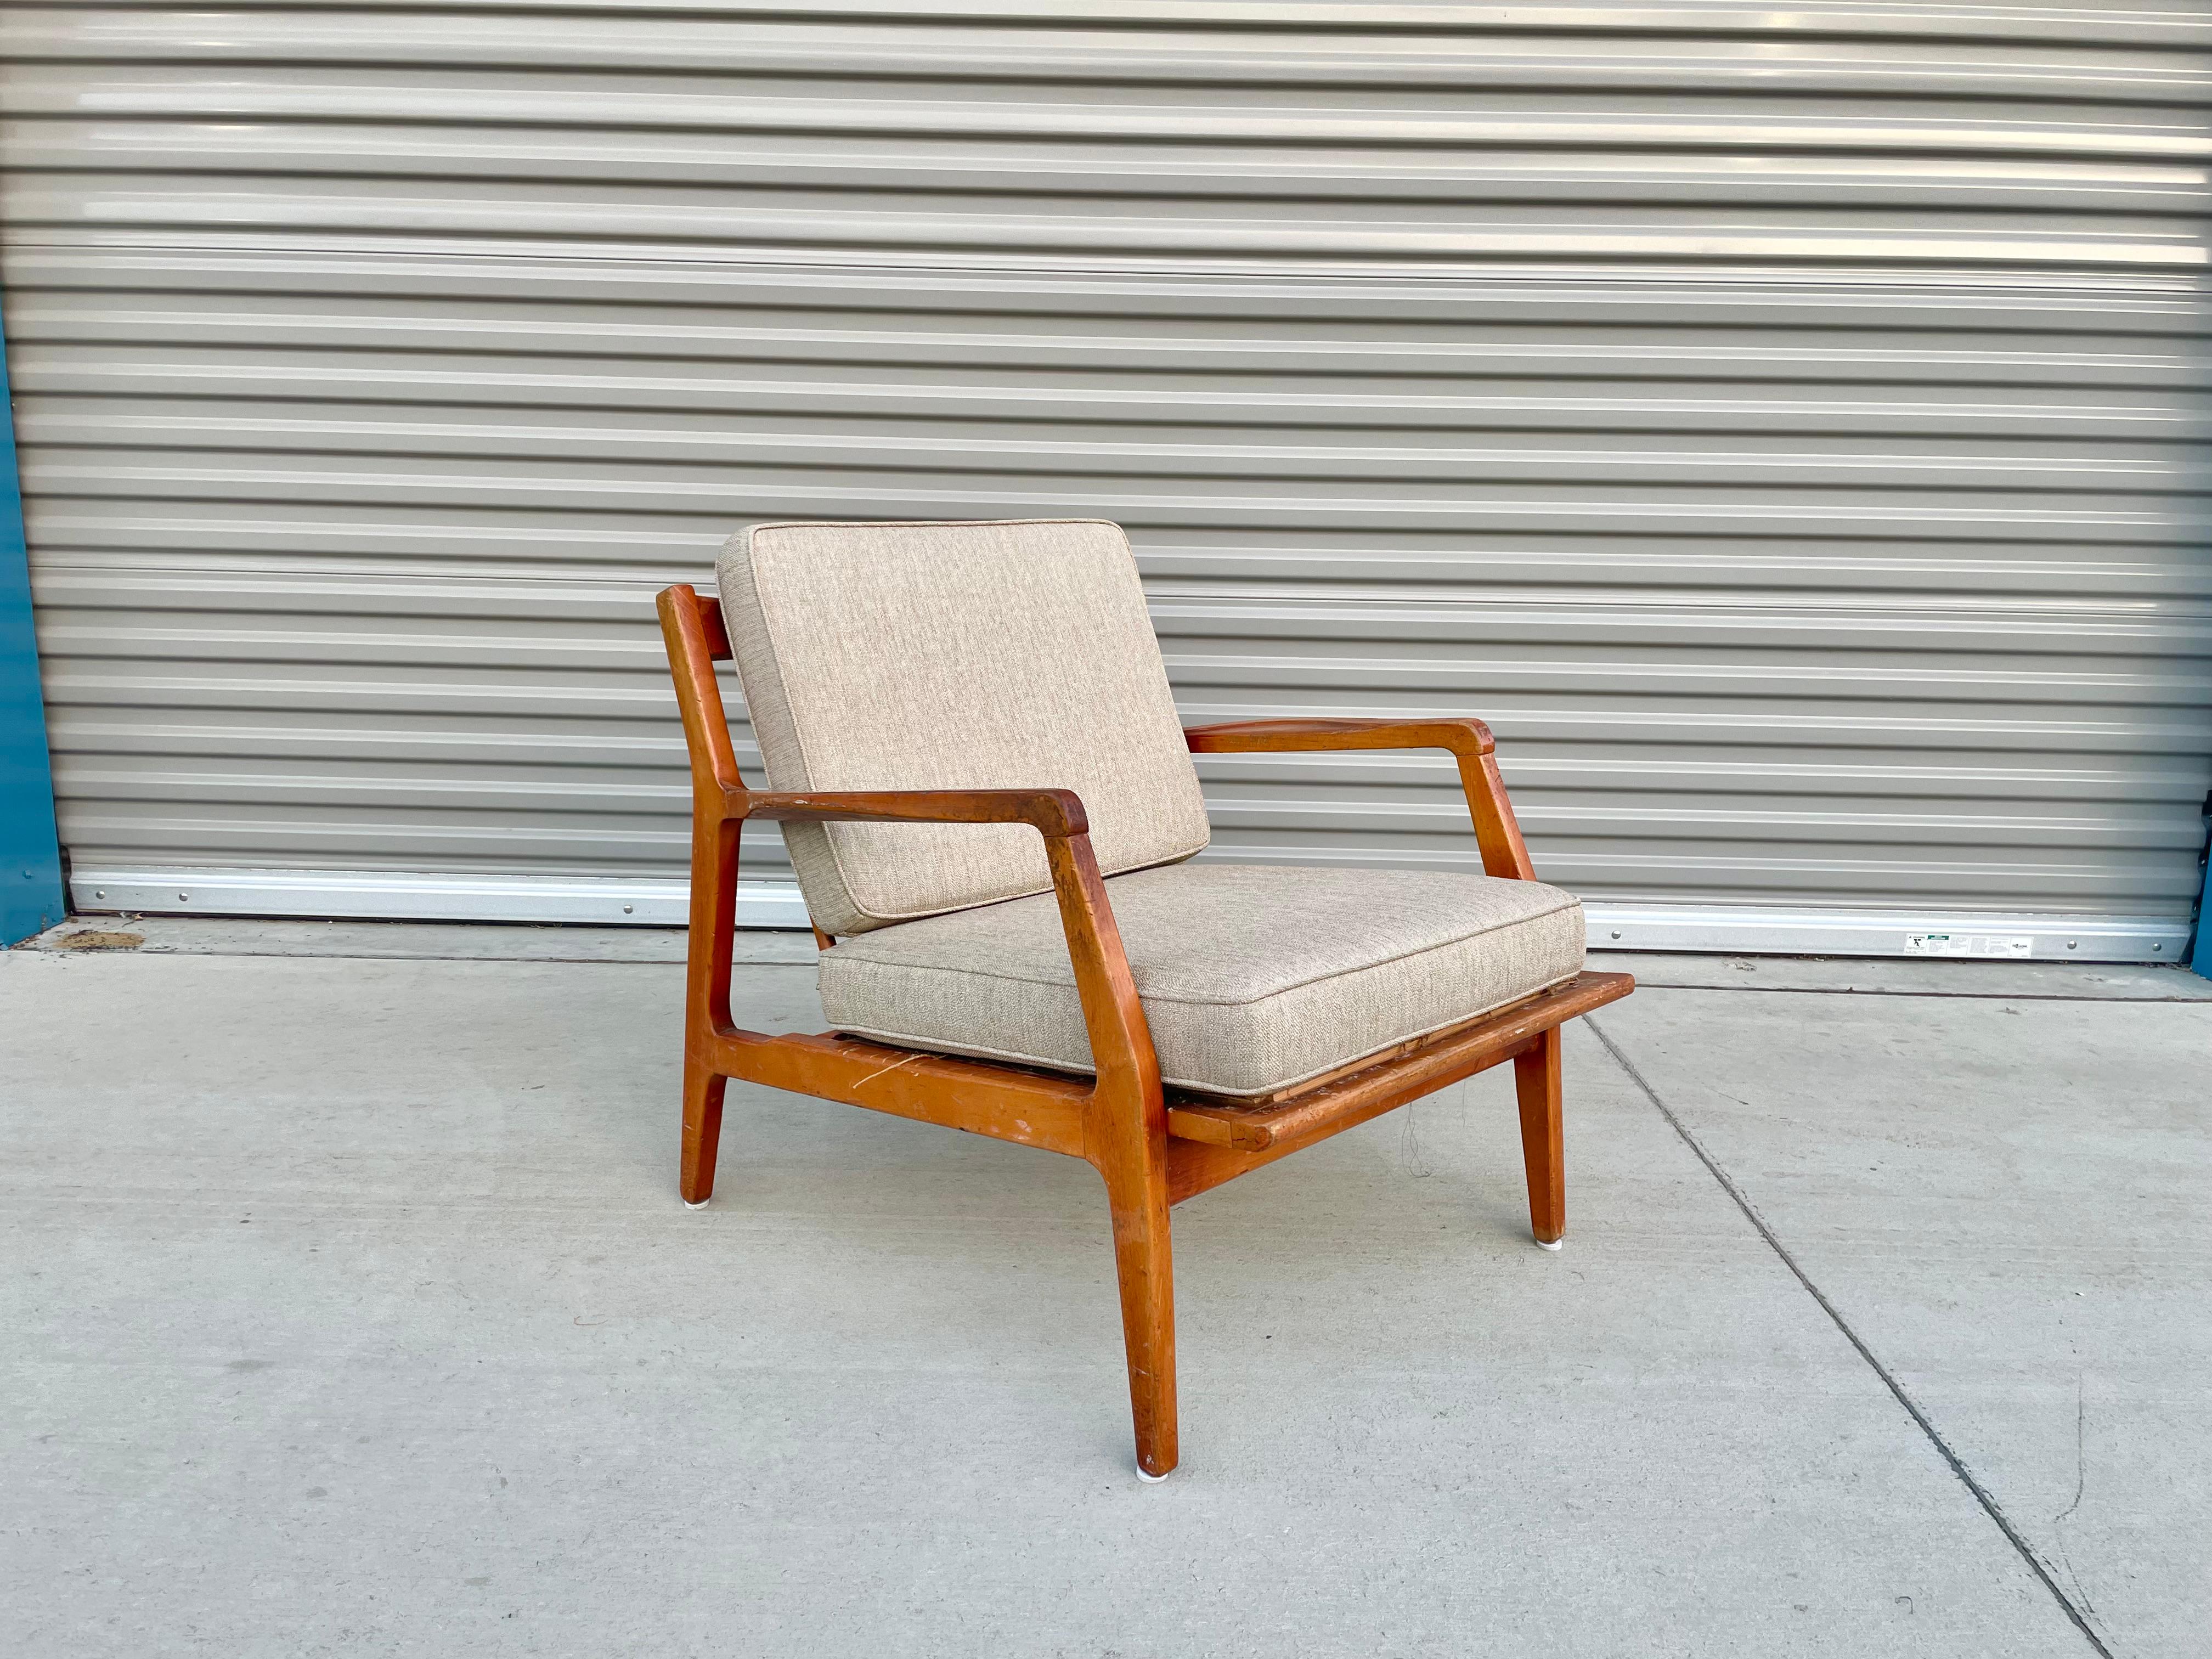 Moderner dänischer Sessel aus Nussbaumholz von Ib Kofod-Larsen für Selig in Dänemark, ca. 1960er Jahre. Dieser Loungesessel im Vintage-Stil verfügt über ein Gestell aus massivem Nussbaumholz mit abgewinkelten Beinen und einer geformten Rückenlehne